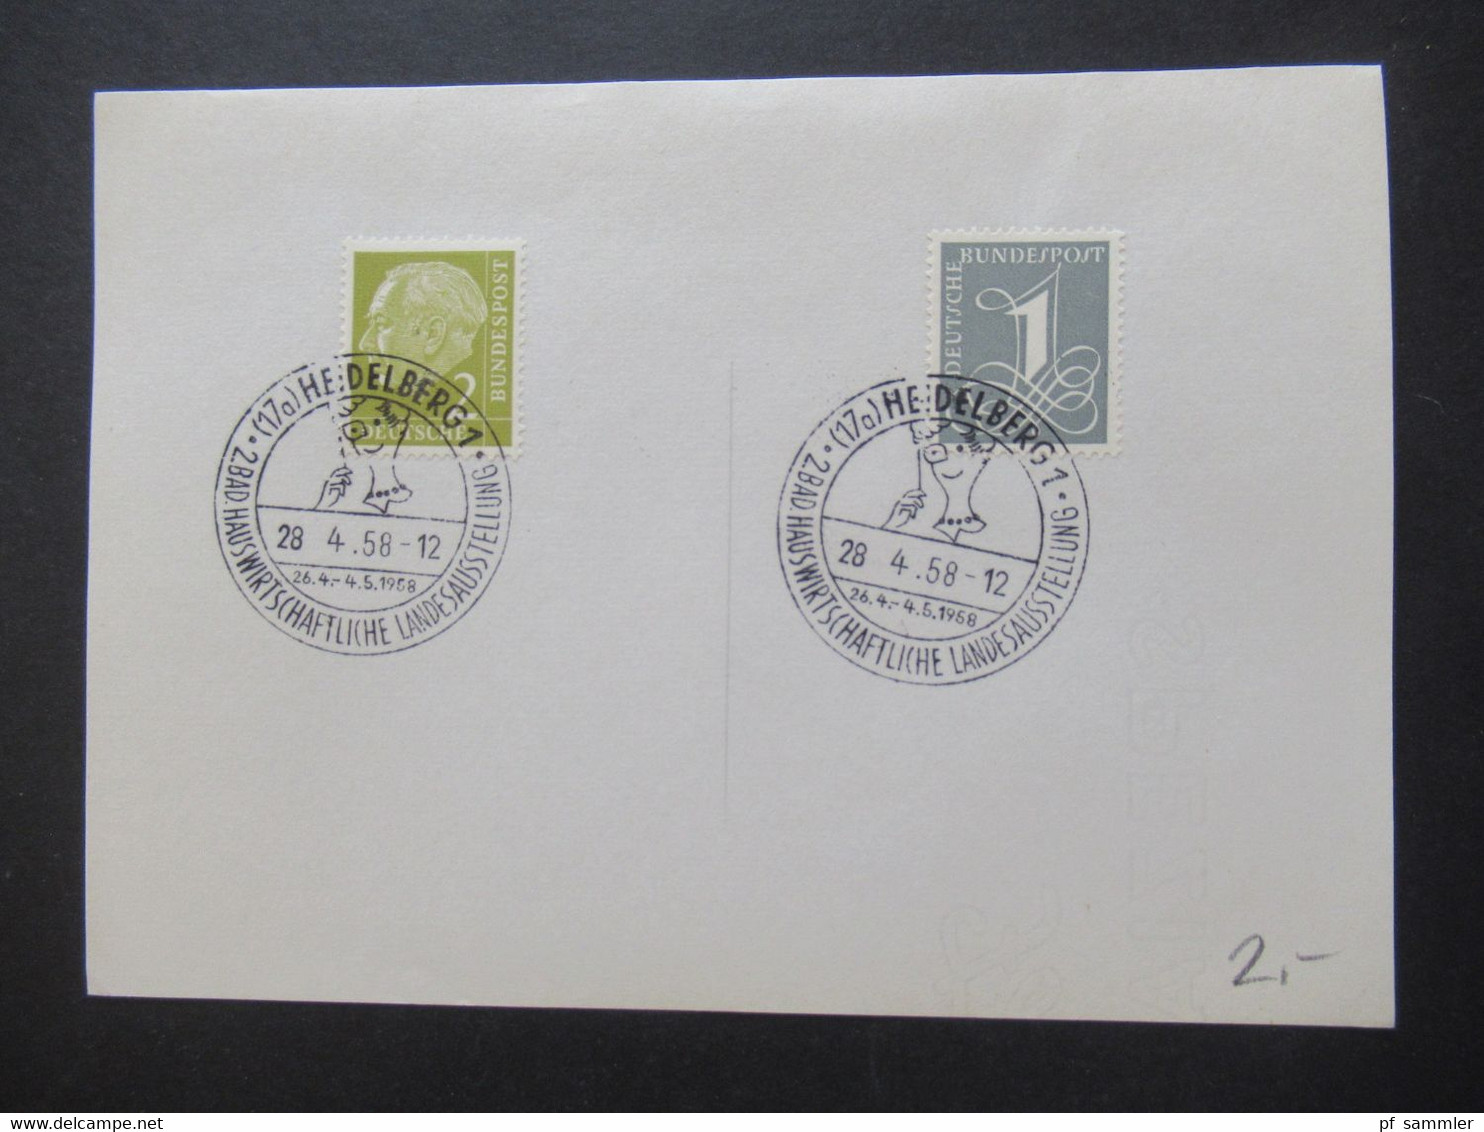 BRD ab Posthorn Nr. 123 Jahre 1954 - 61 Briefstücke / Blankozettel mit Sonderstempel Heidelberg verschiedene SST